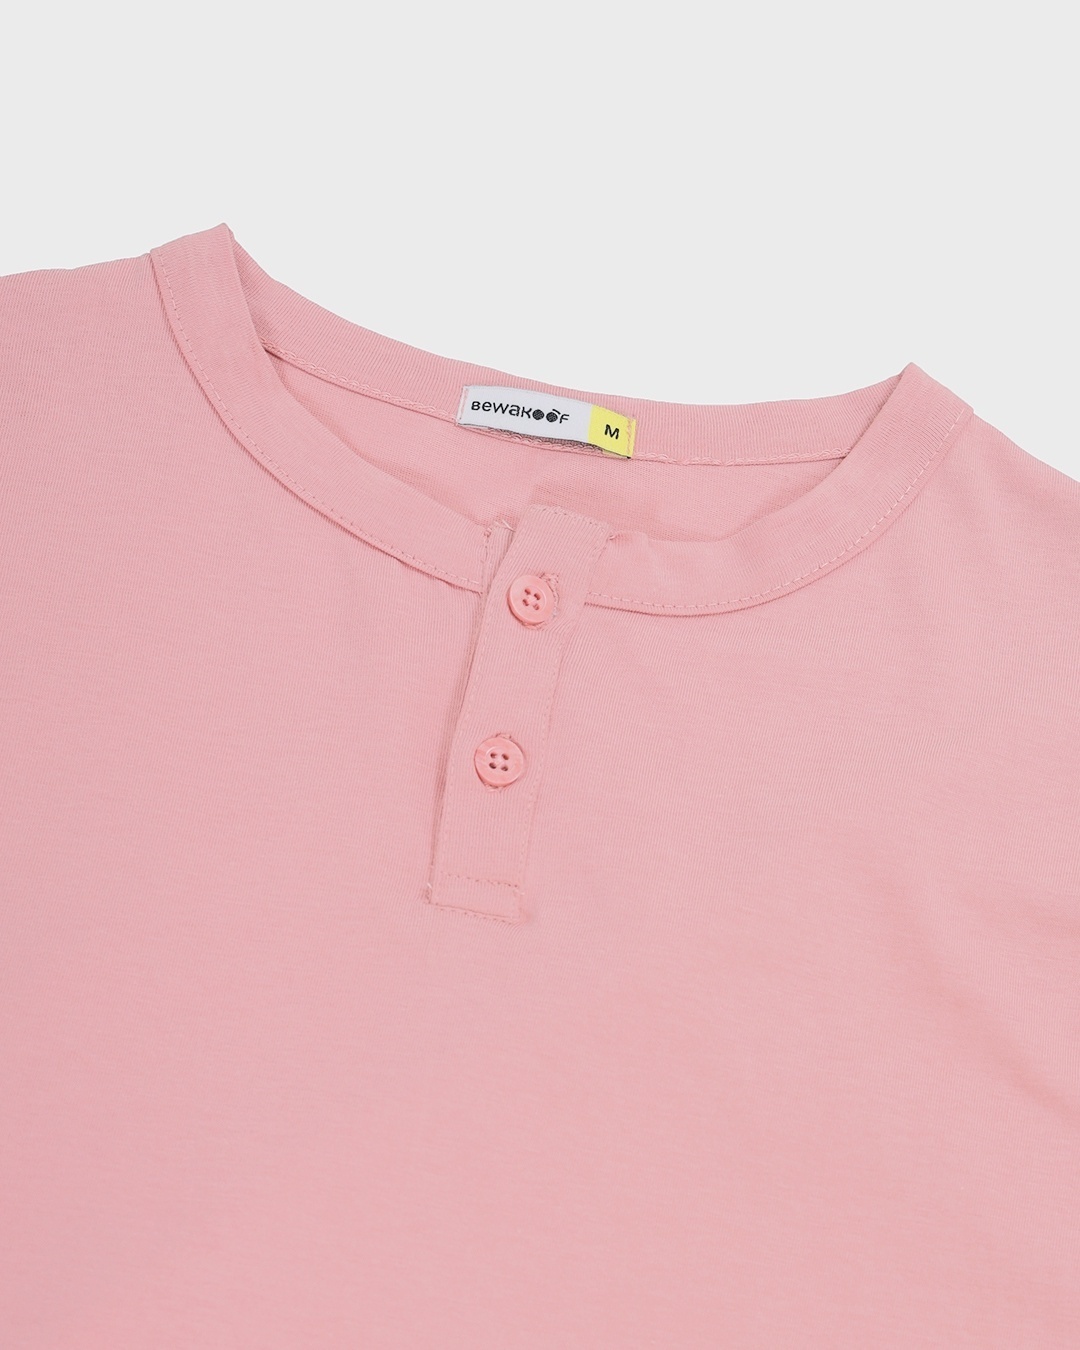 Shop Men's Cheeky Pink Henley T-shirt